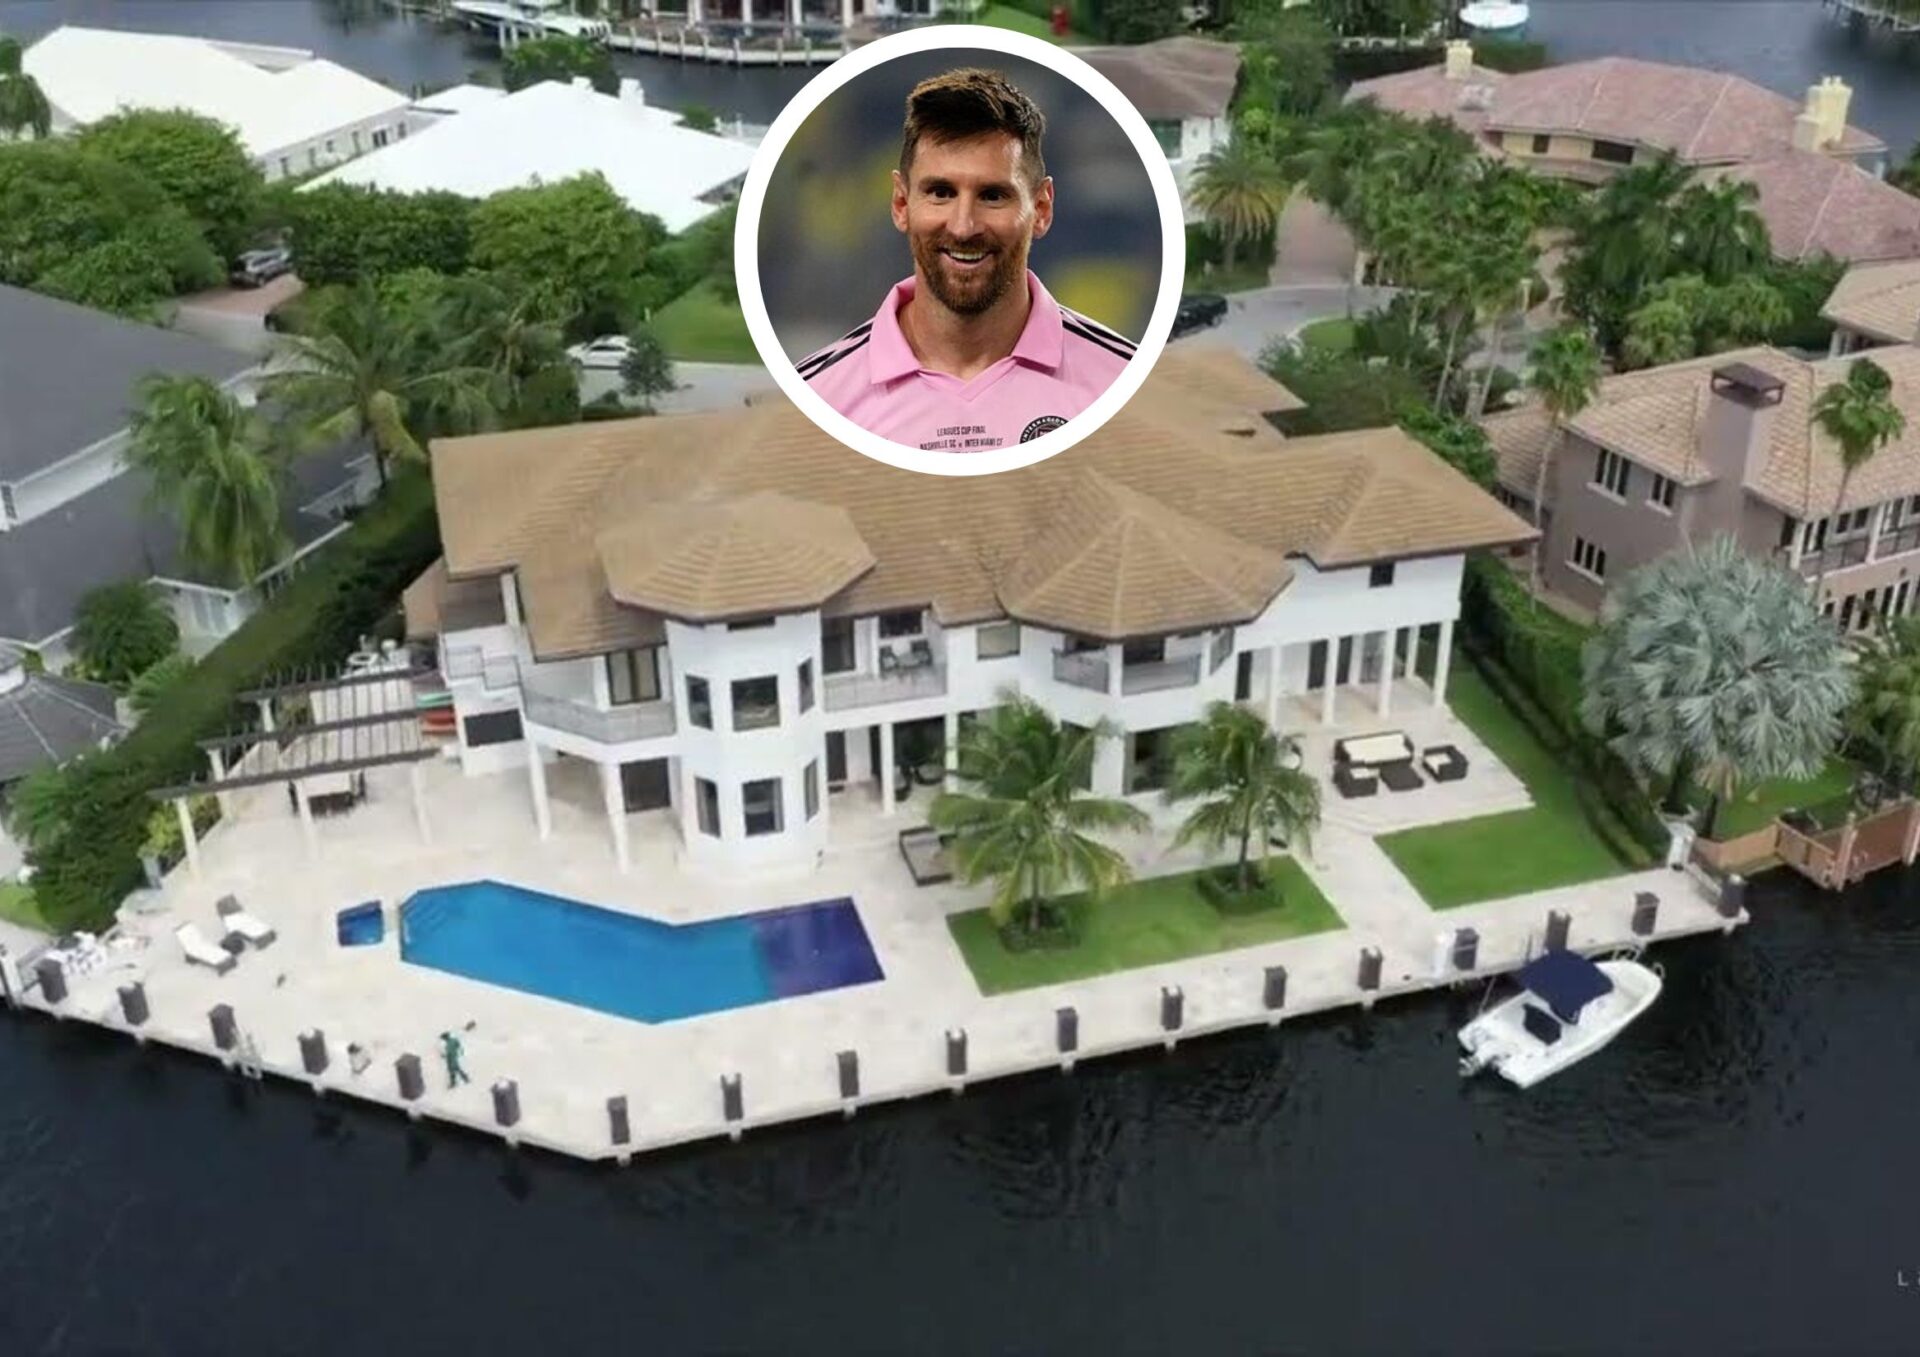 Main Estate Image of Lionel Messi